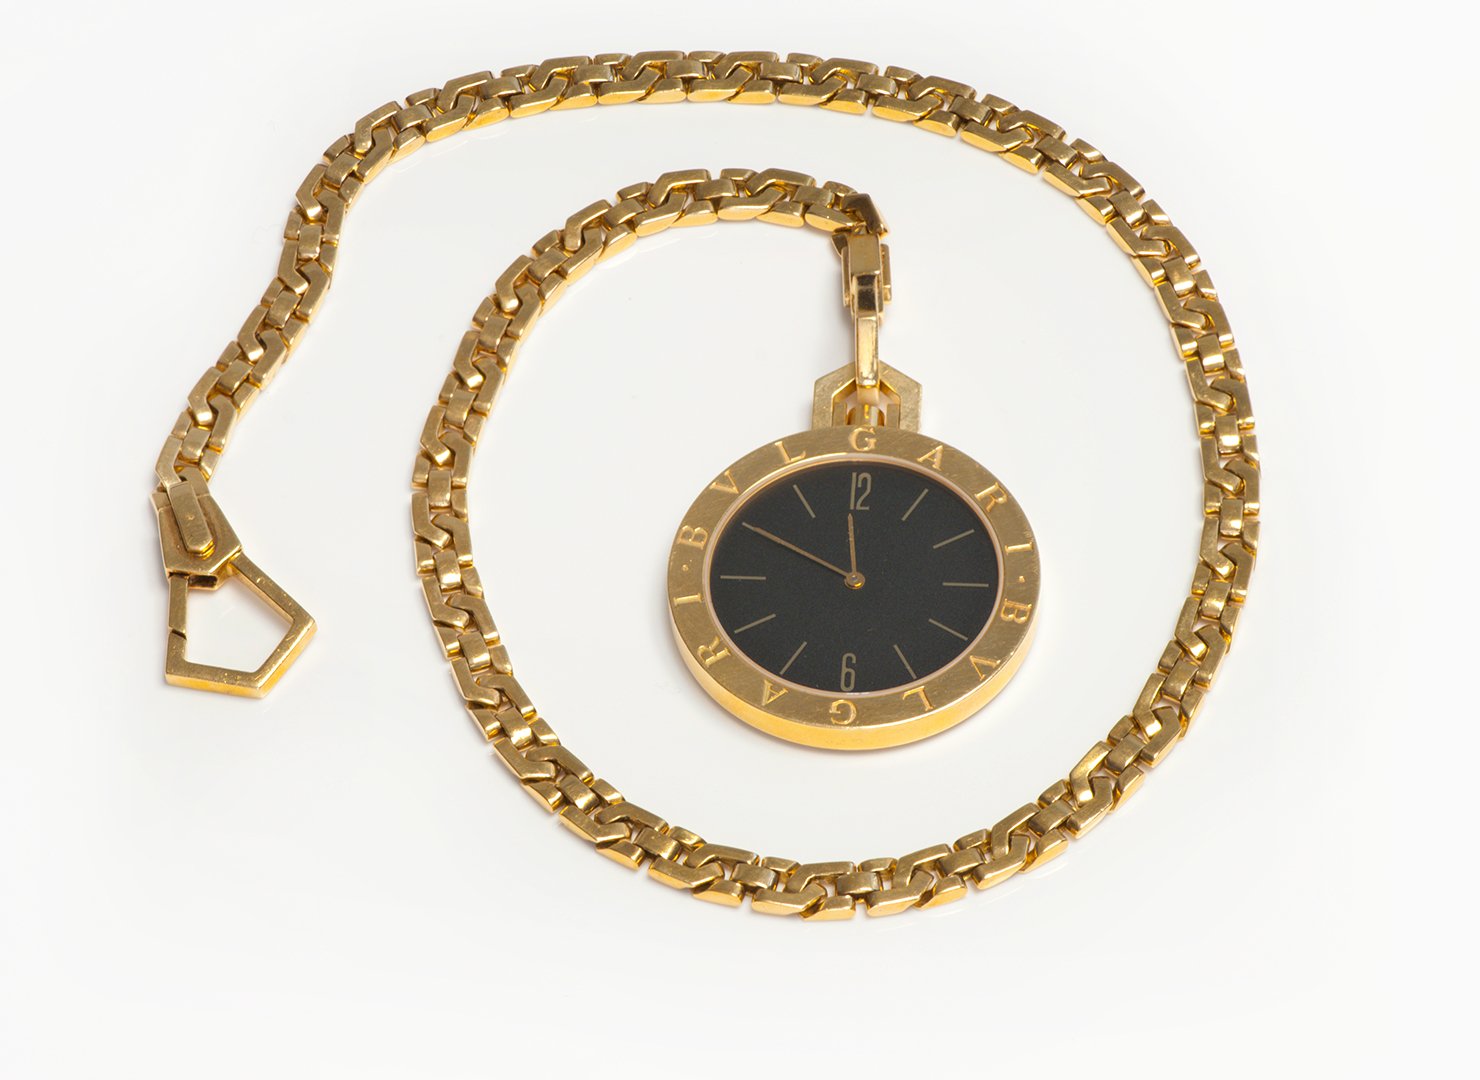 Bulgari Bvlgari Gold Pocket Watch and Chain